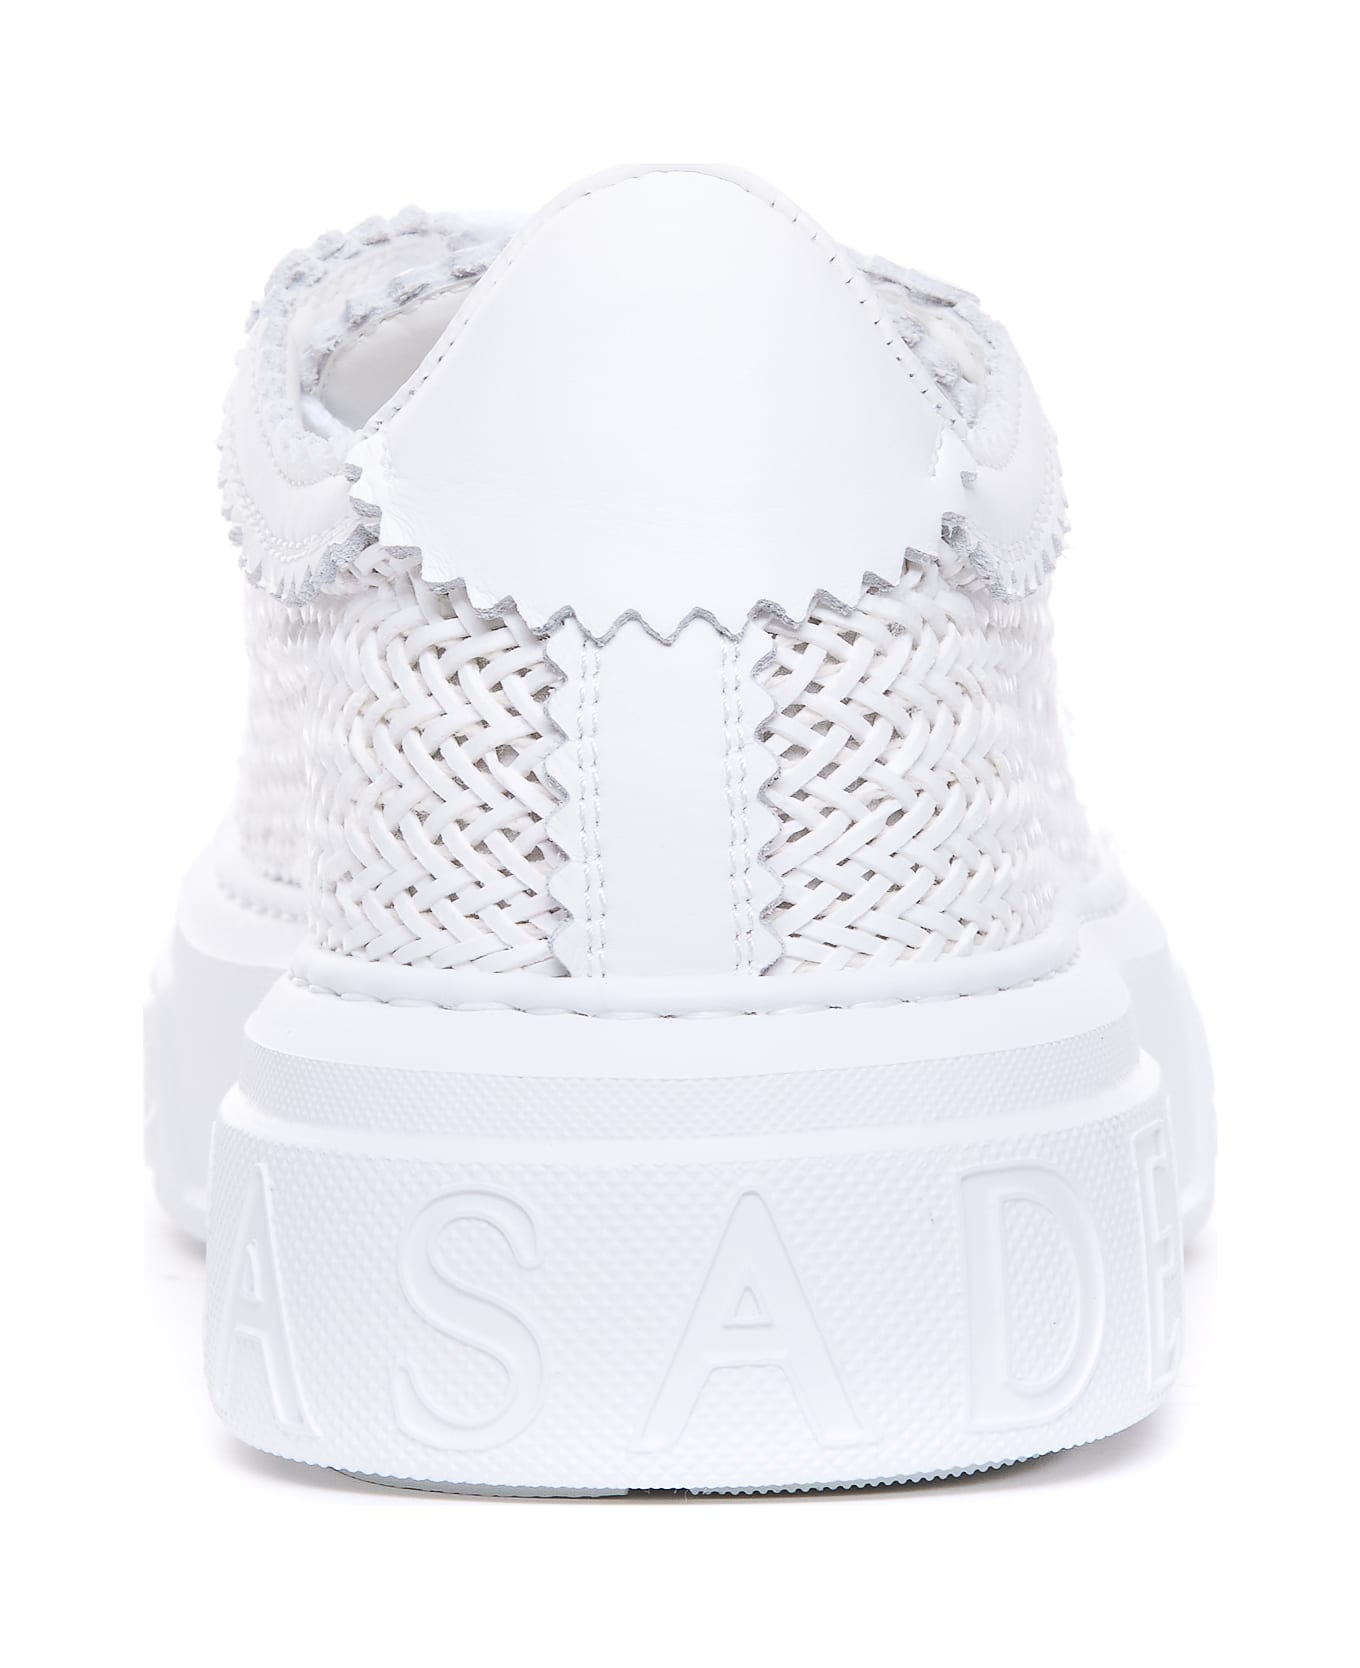 Casadei Hanoi Sneakers - White